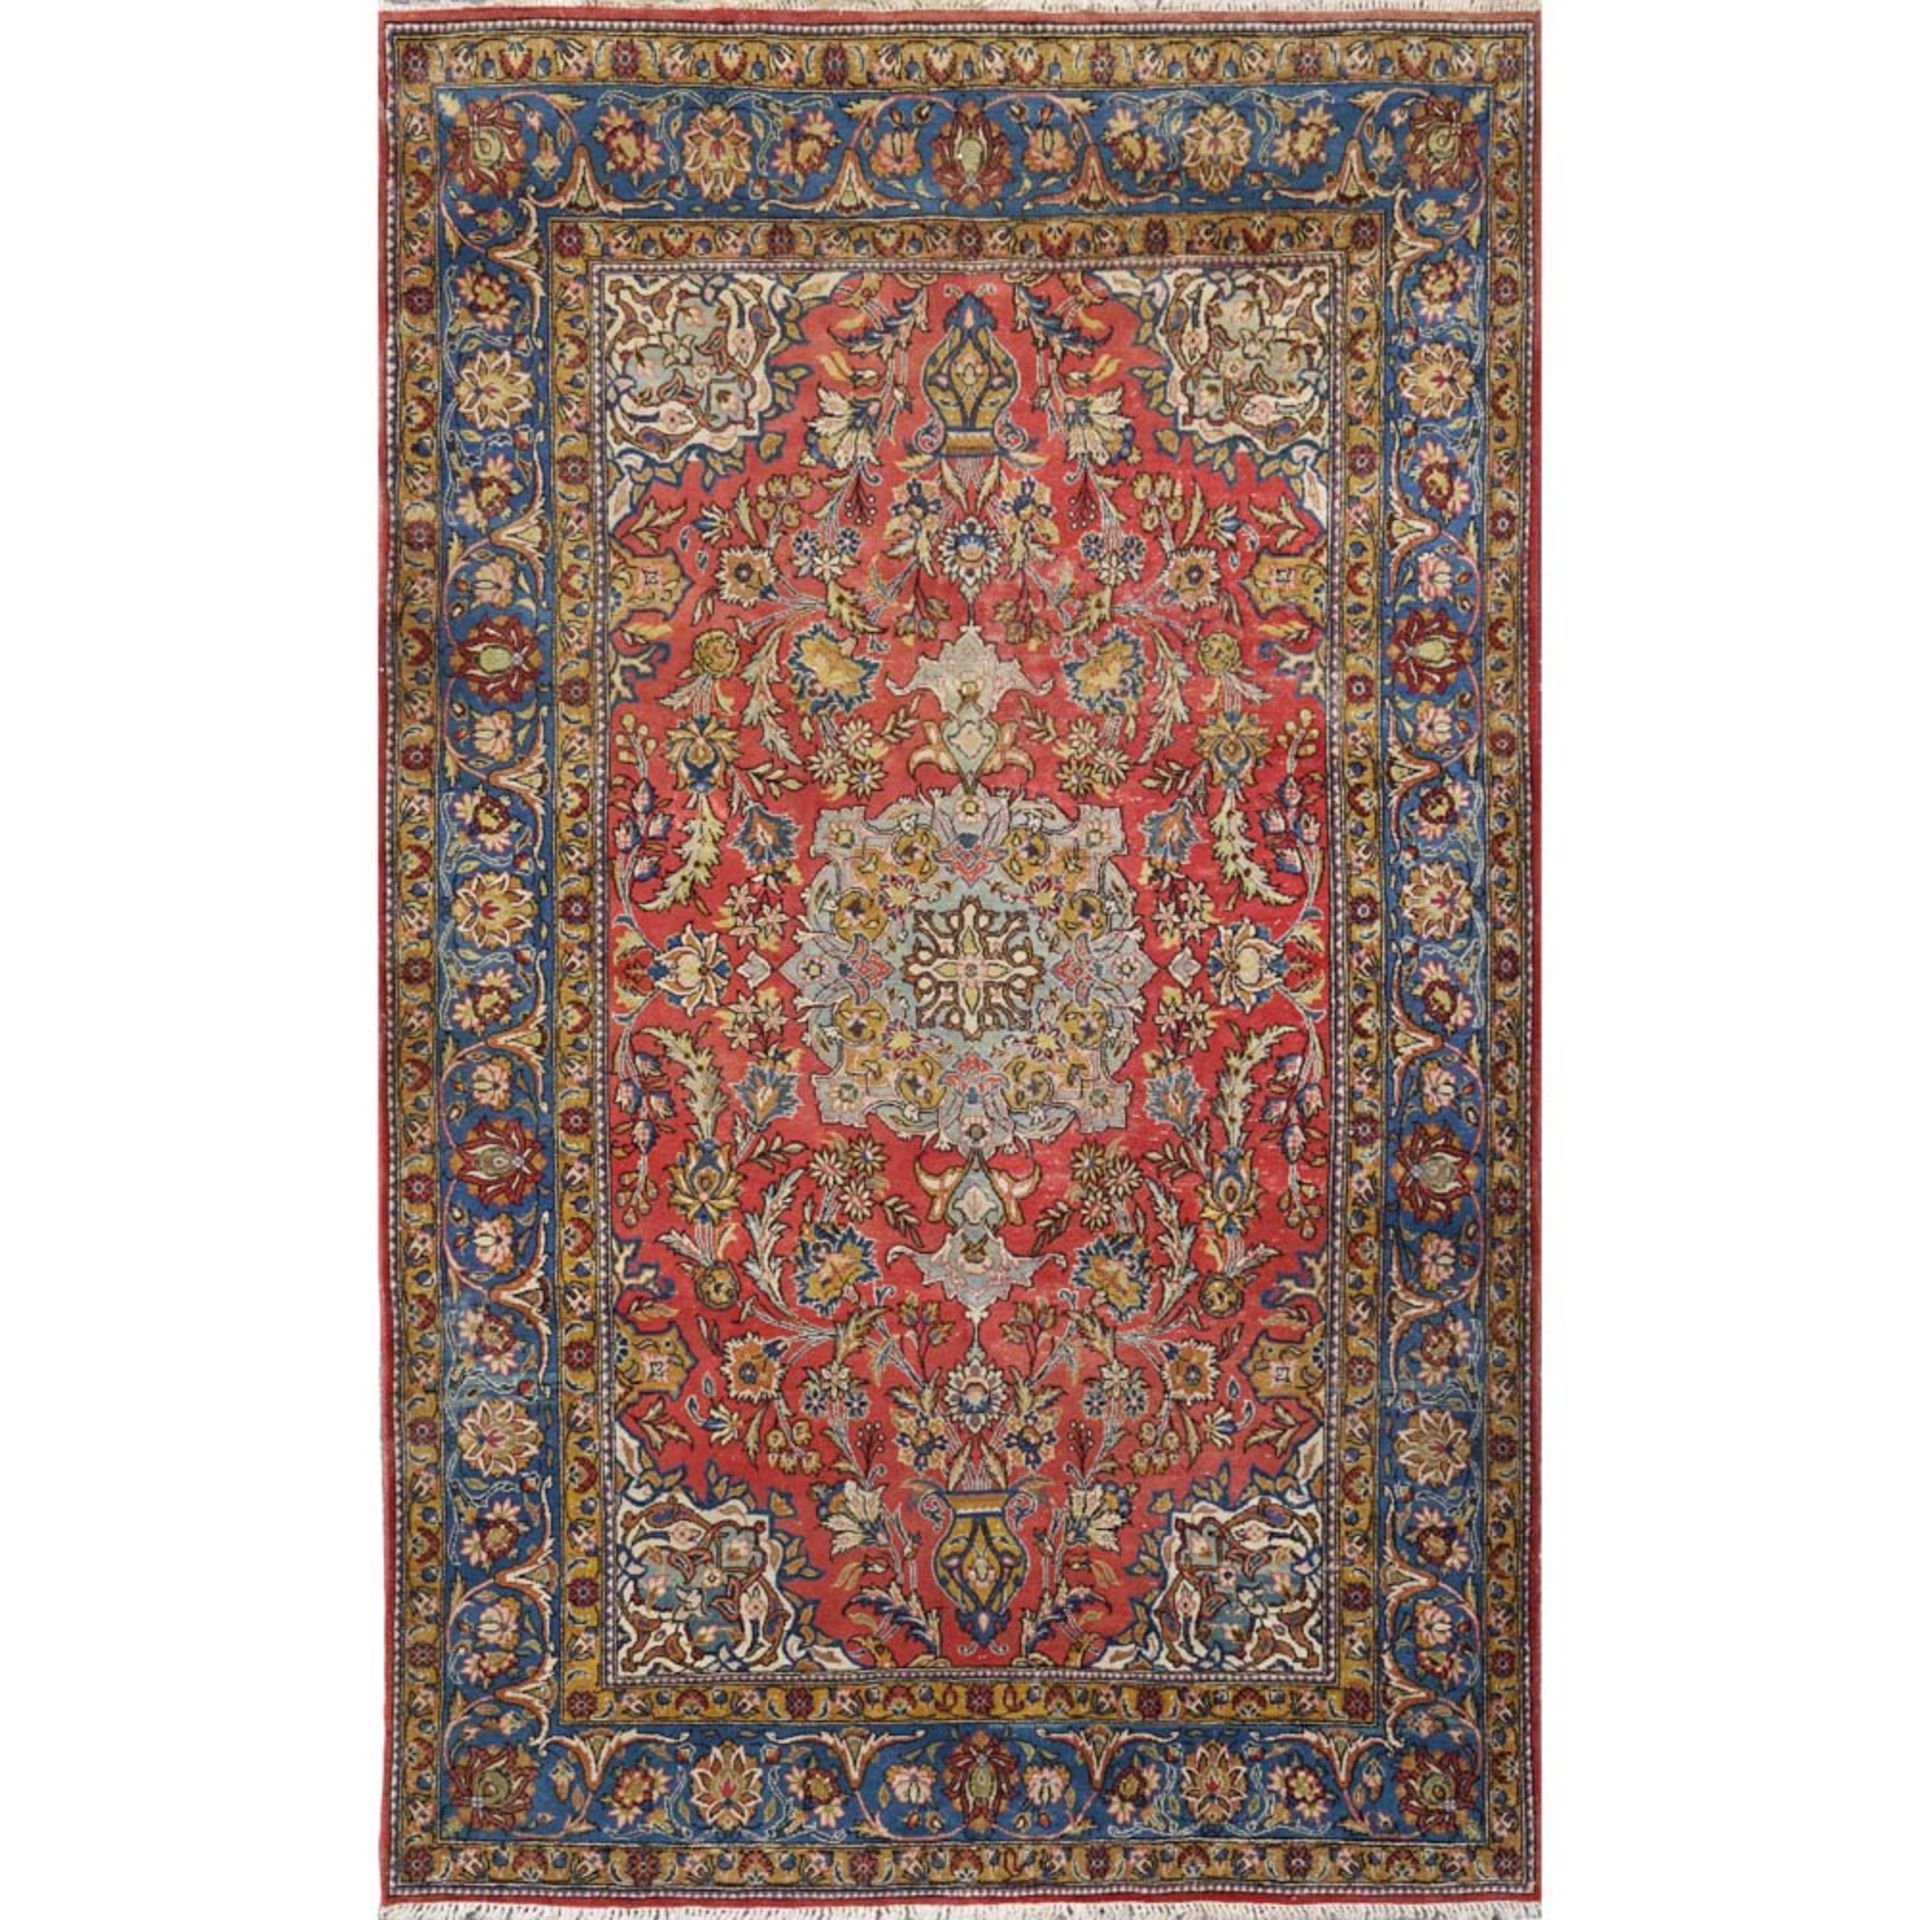 Oriental carpet 20th century 253x155 cm.